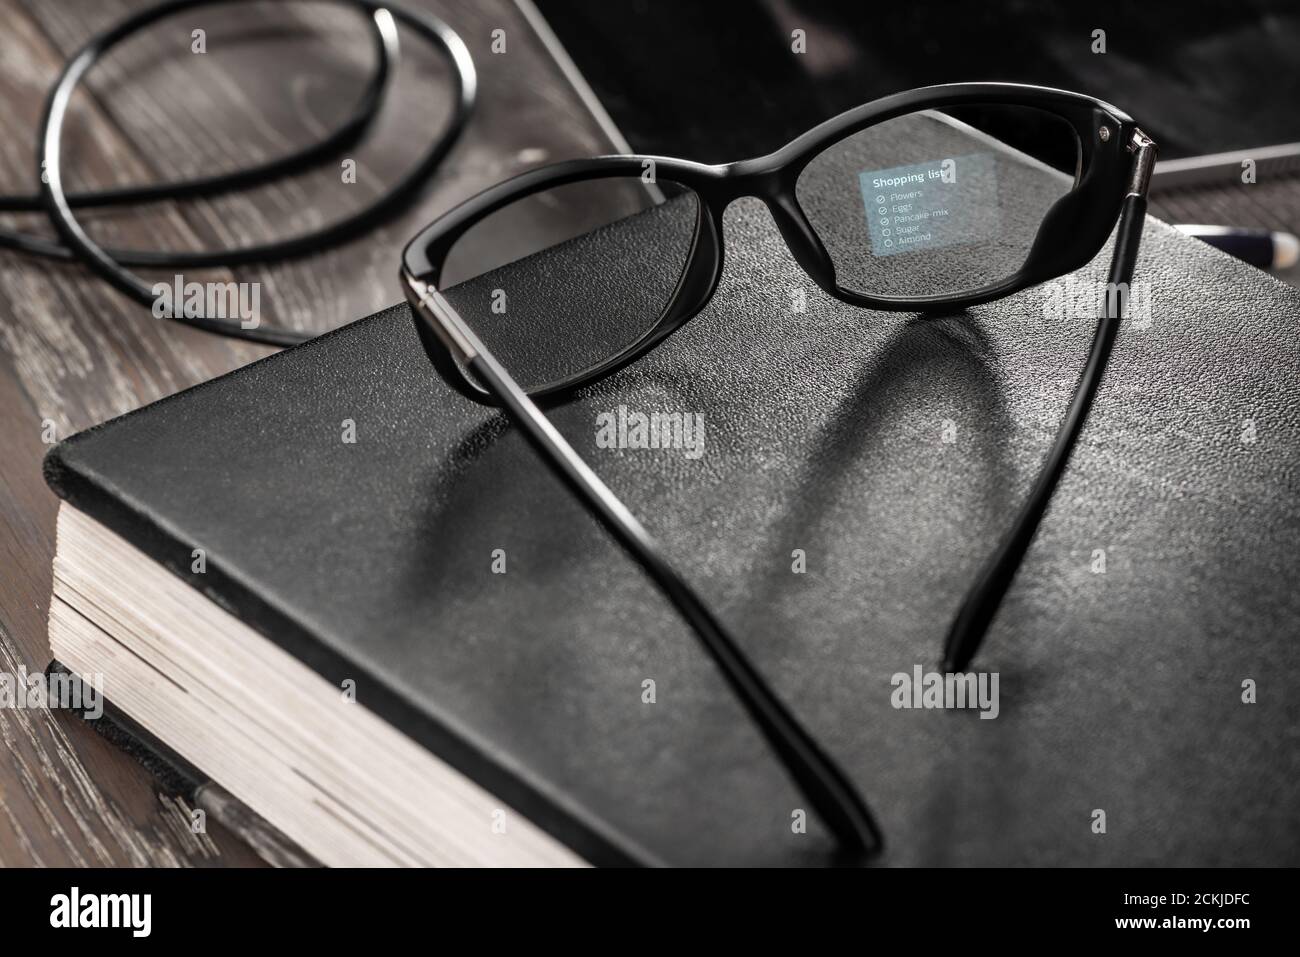 Elenco degli acquisti visualizzato sull'obiettivo degli occhiali intelligenti Foto Stock